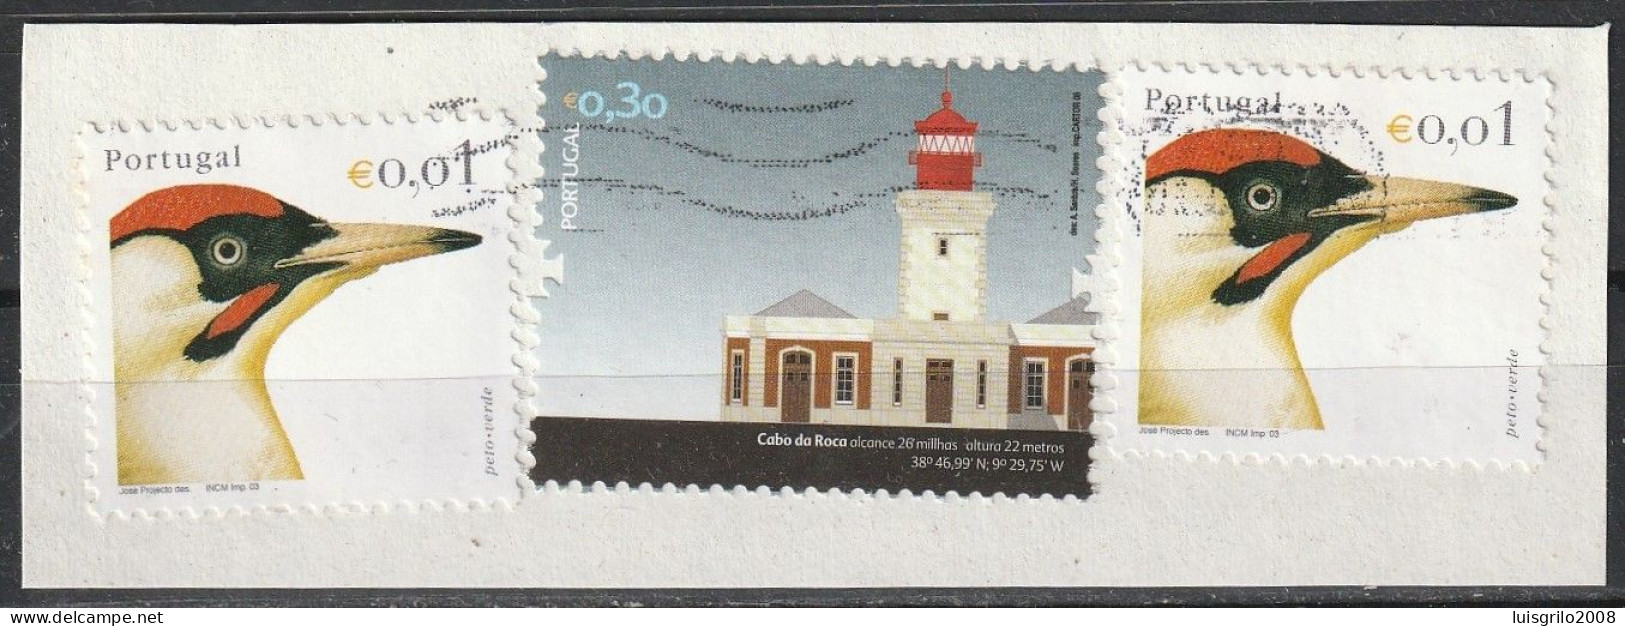 Portugal, 2003 - Aves De Portugal, €0,01 + €0,30 -|- Mundifil - 2934 + 3721 .  Fragment - Birds & Lighthouse - Oblitérés